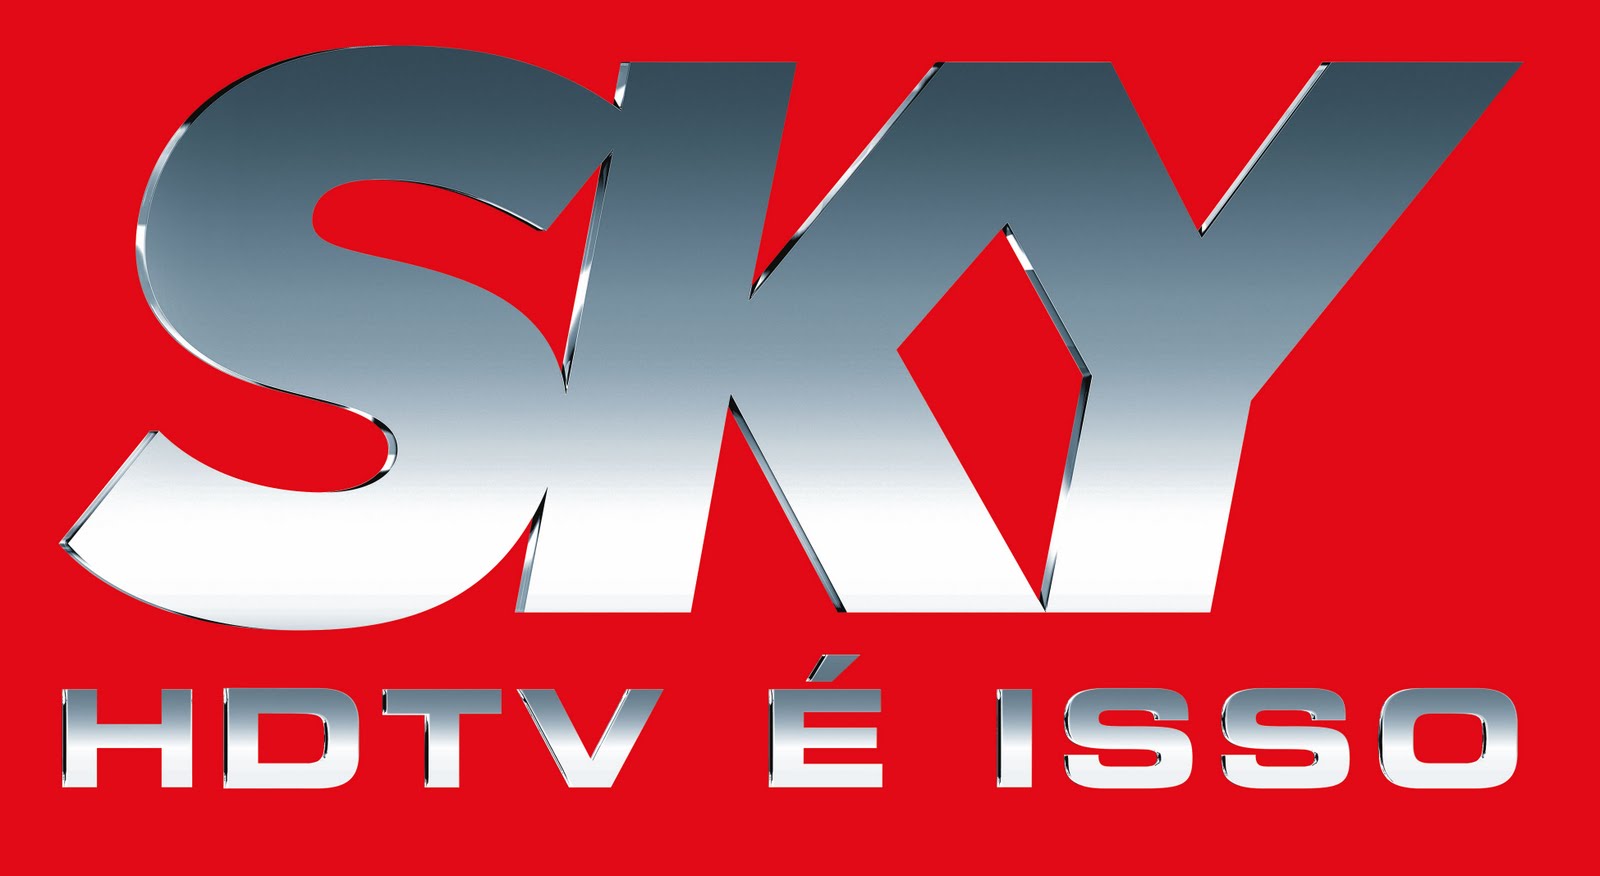 SKY fecha o mês de novembro com quase 5 milhões de assinantes Sky+prata+hdtv